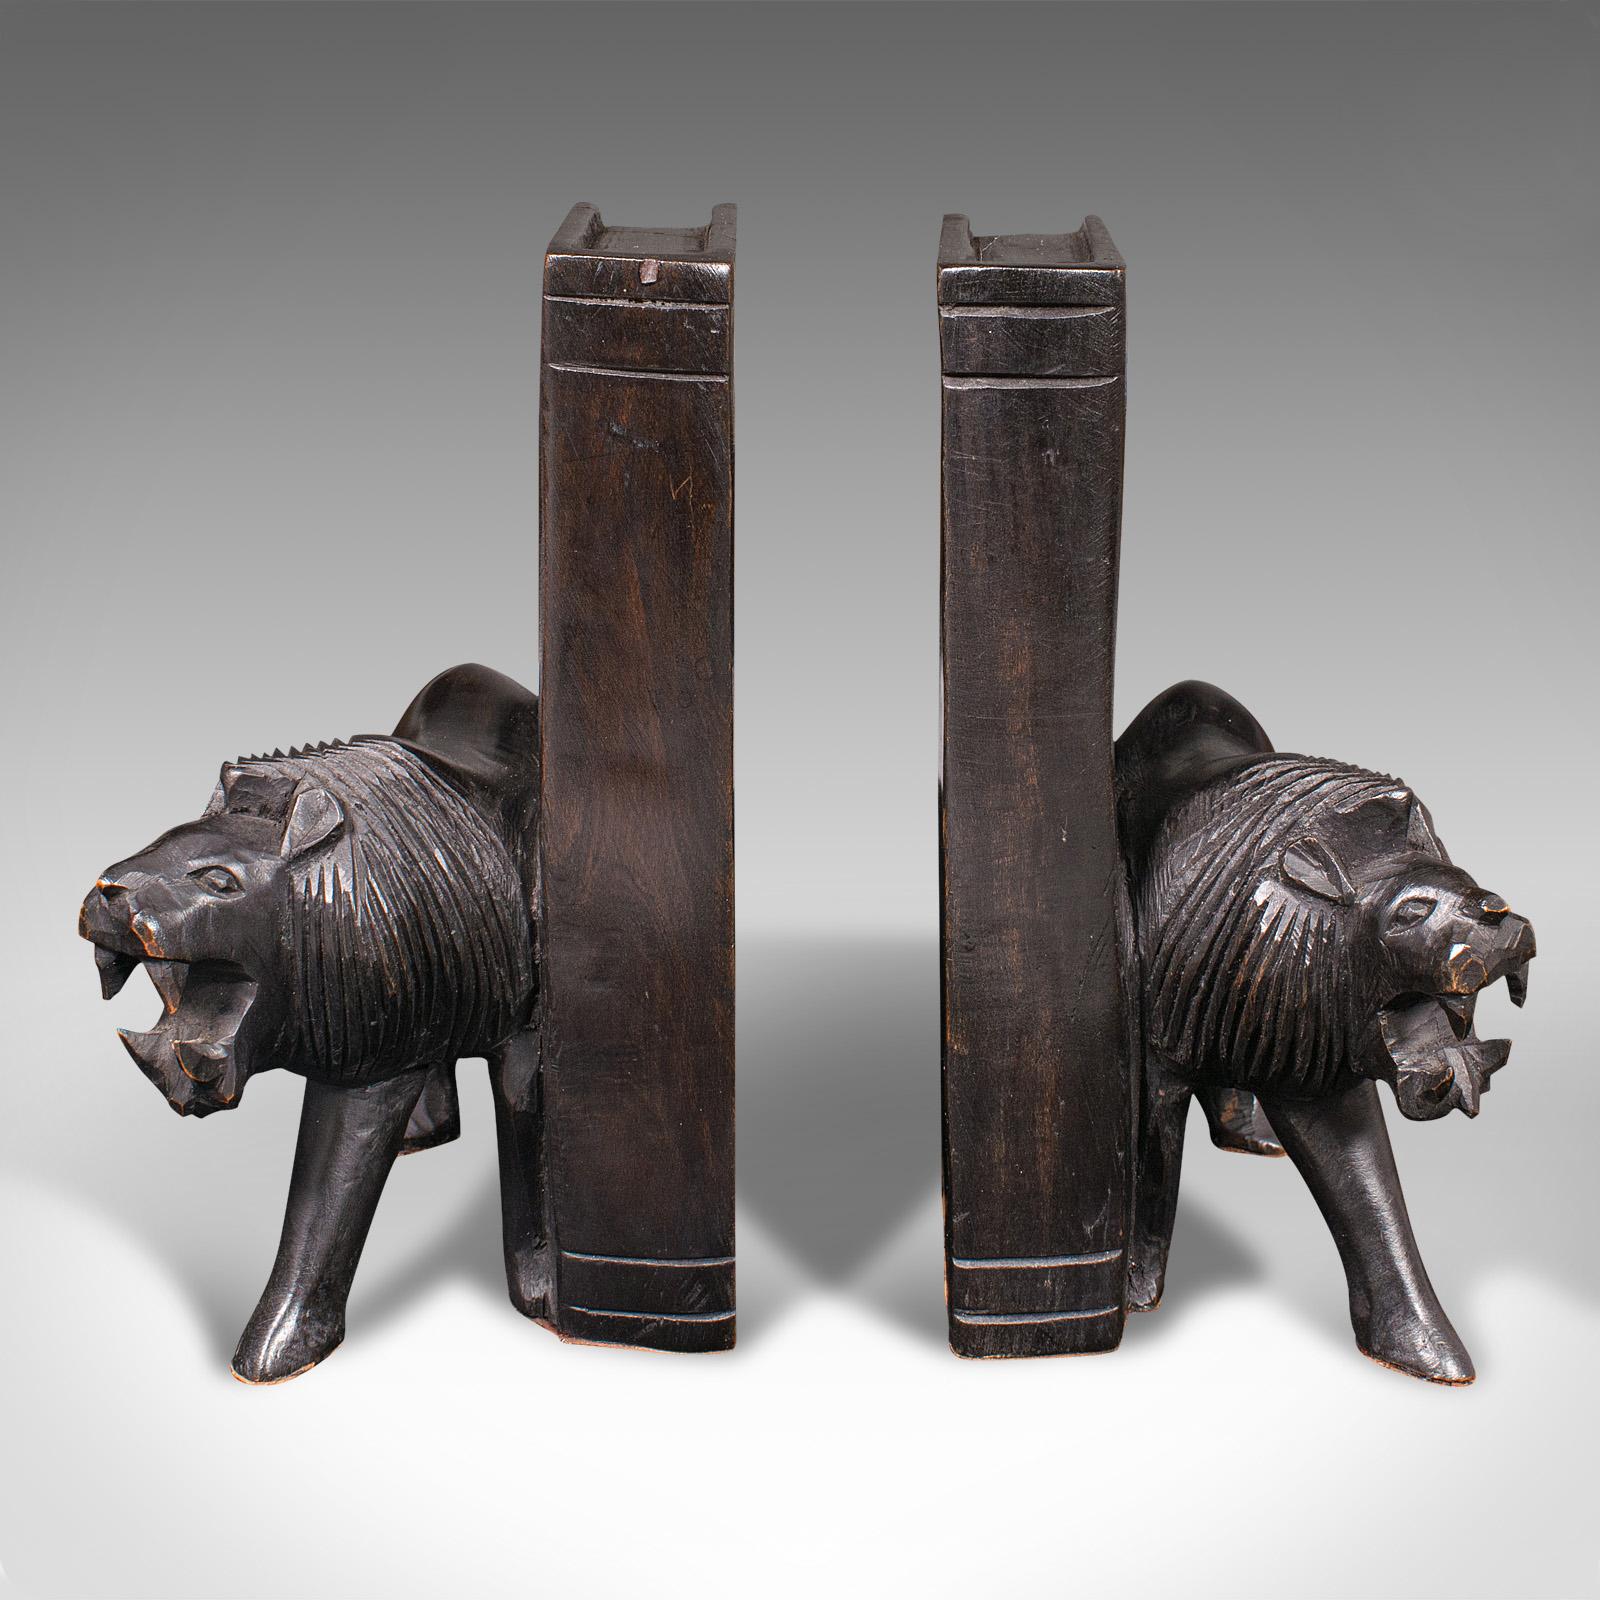 Unser Lagerbestand # 18.9940

Dies ist ein Paar von antiken geschnitzten Löwen Buchstützen. Eine orientalische Buchablage aus ebonisiertem Eisenholz mit Tierfiguren, aus der spätviktorianischen Zeit, um 1900.

Wilde Löwenformen, mit einem charmanten